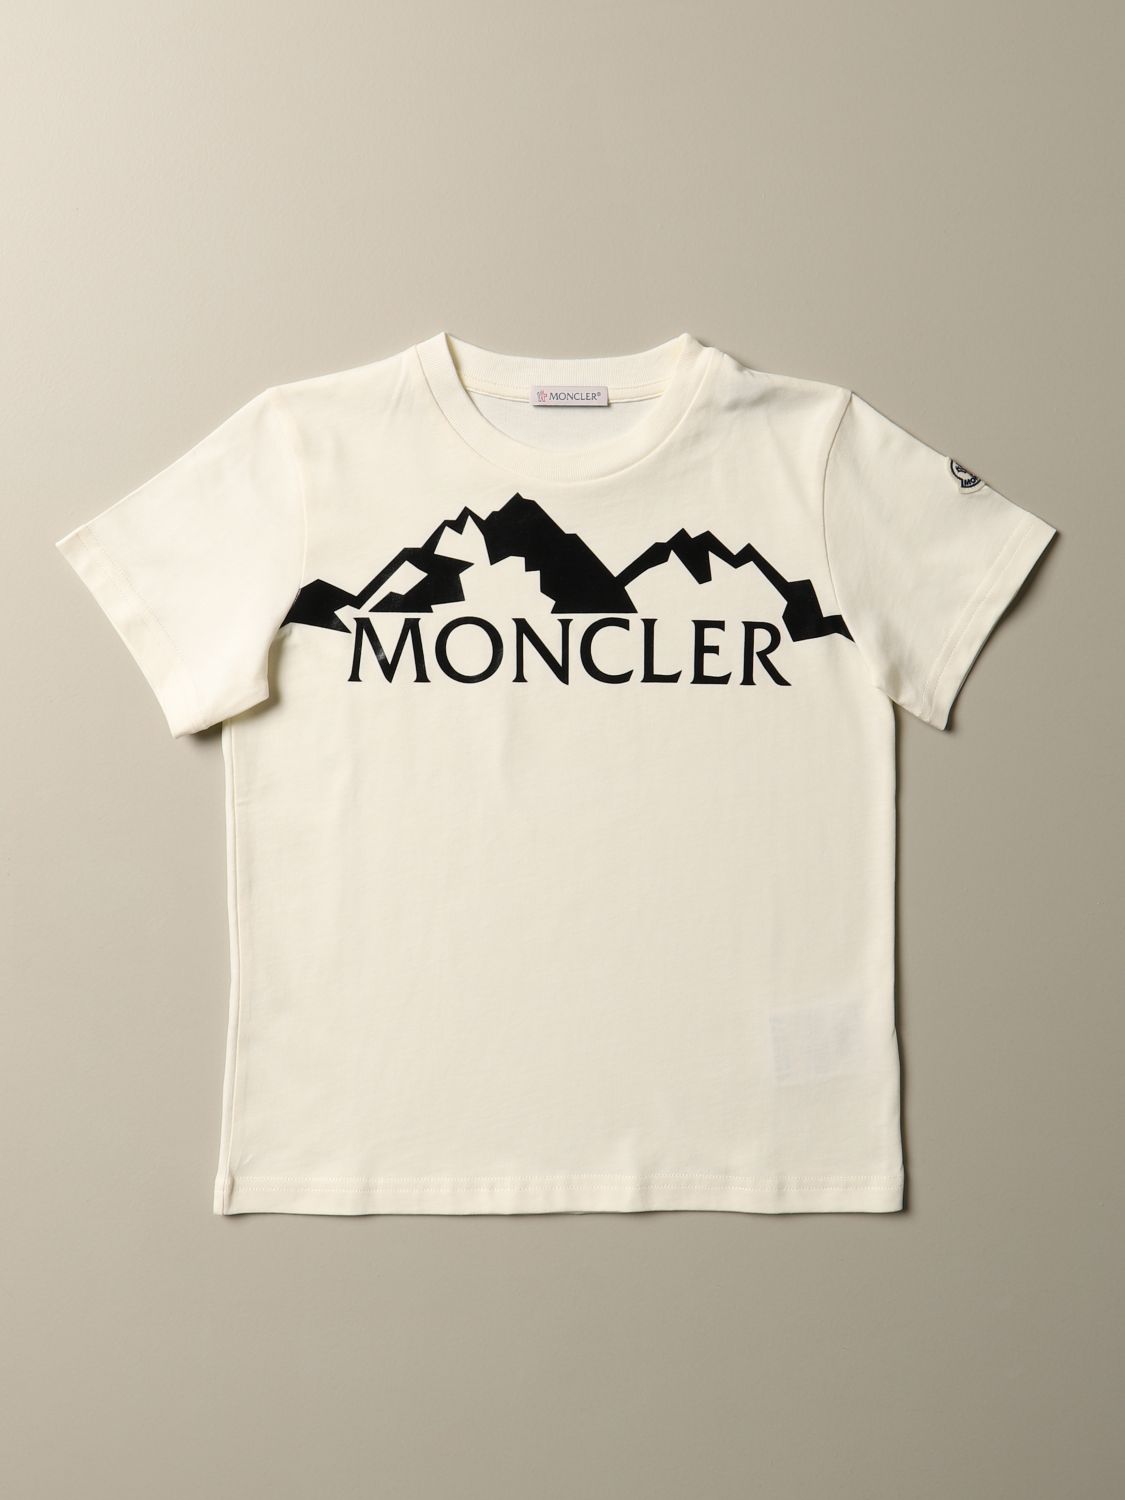 moncler t shirt uk